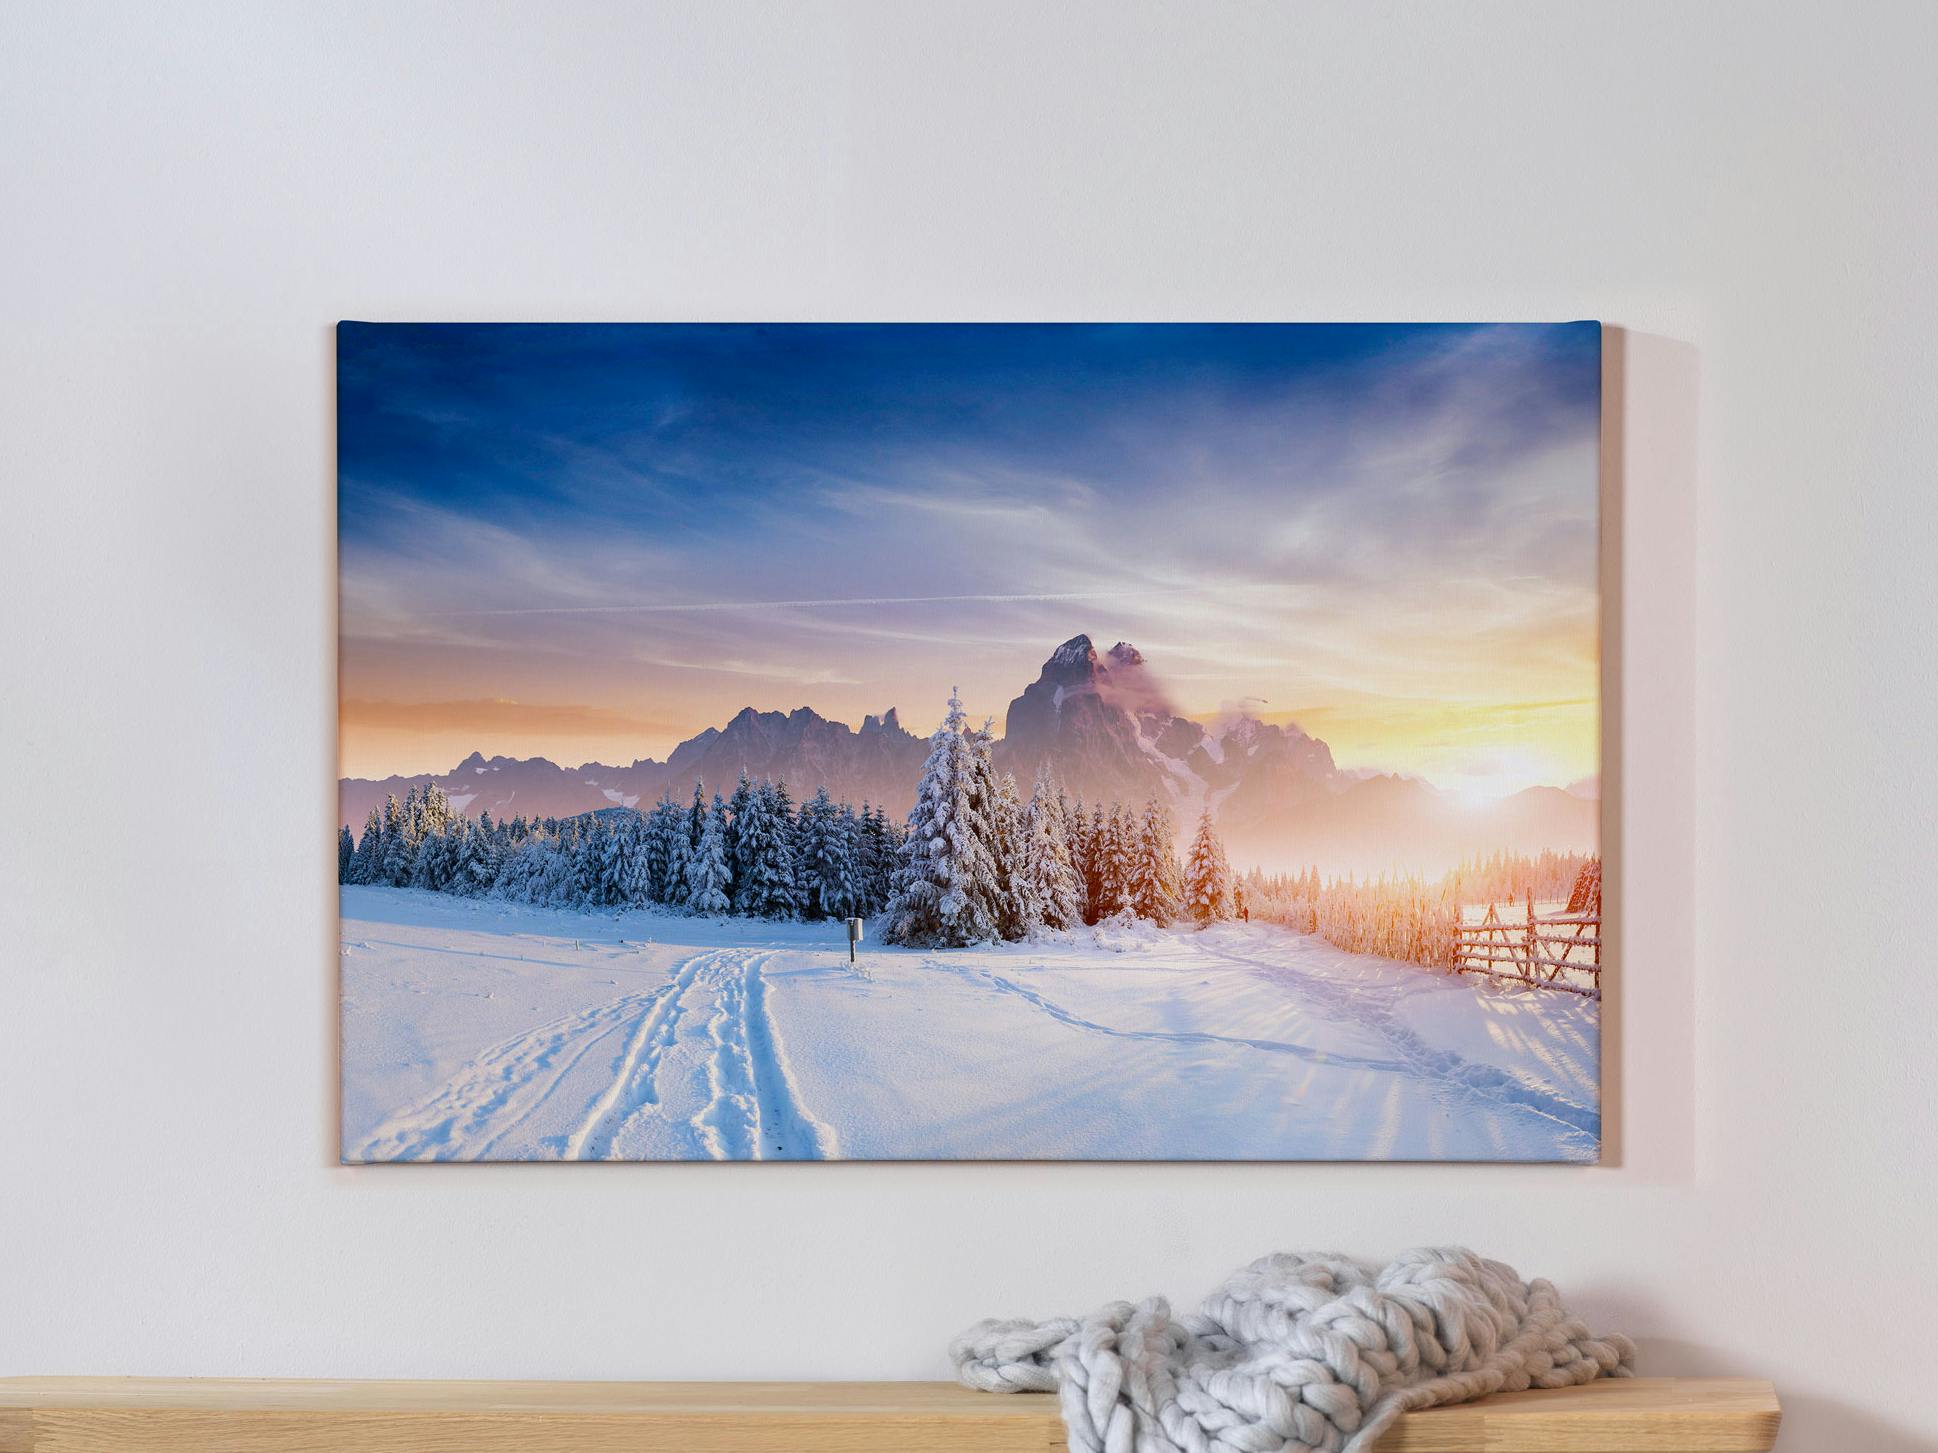 Foto op canvas met winterse landschapsfoto's op een grijze muur